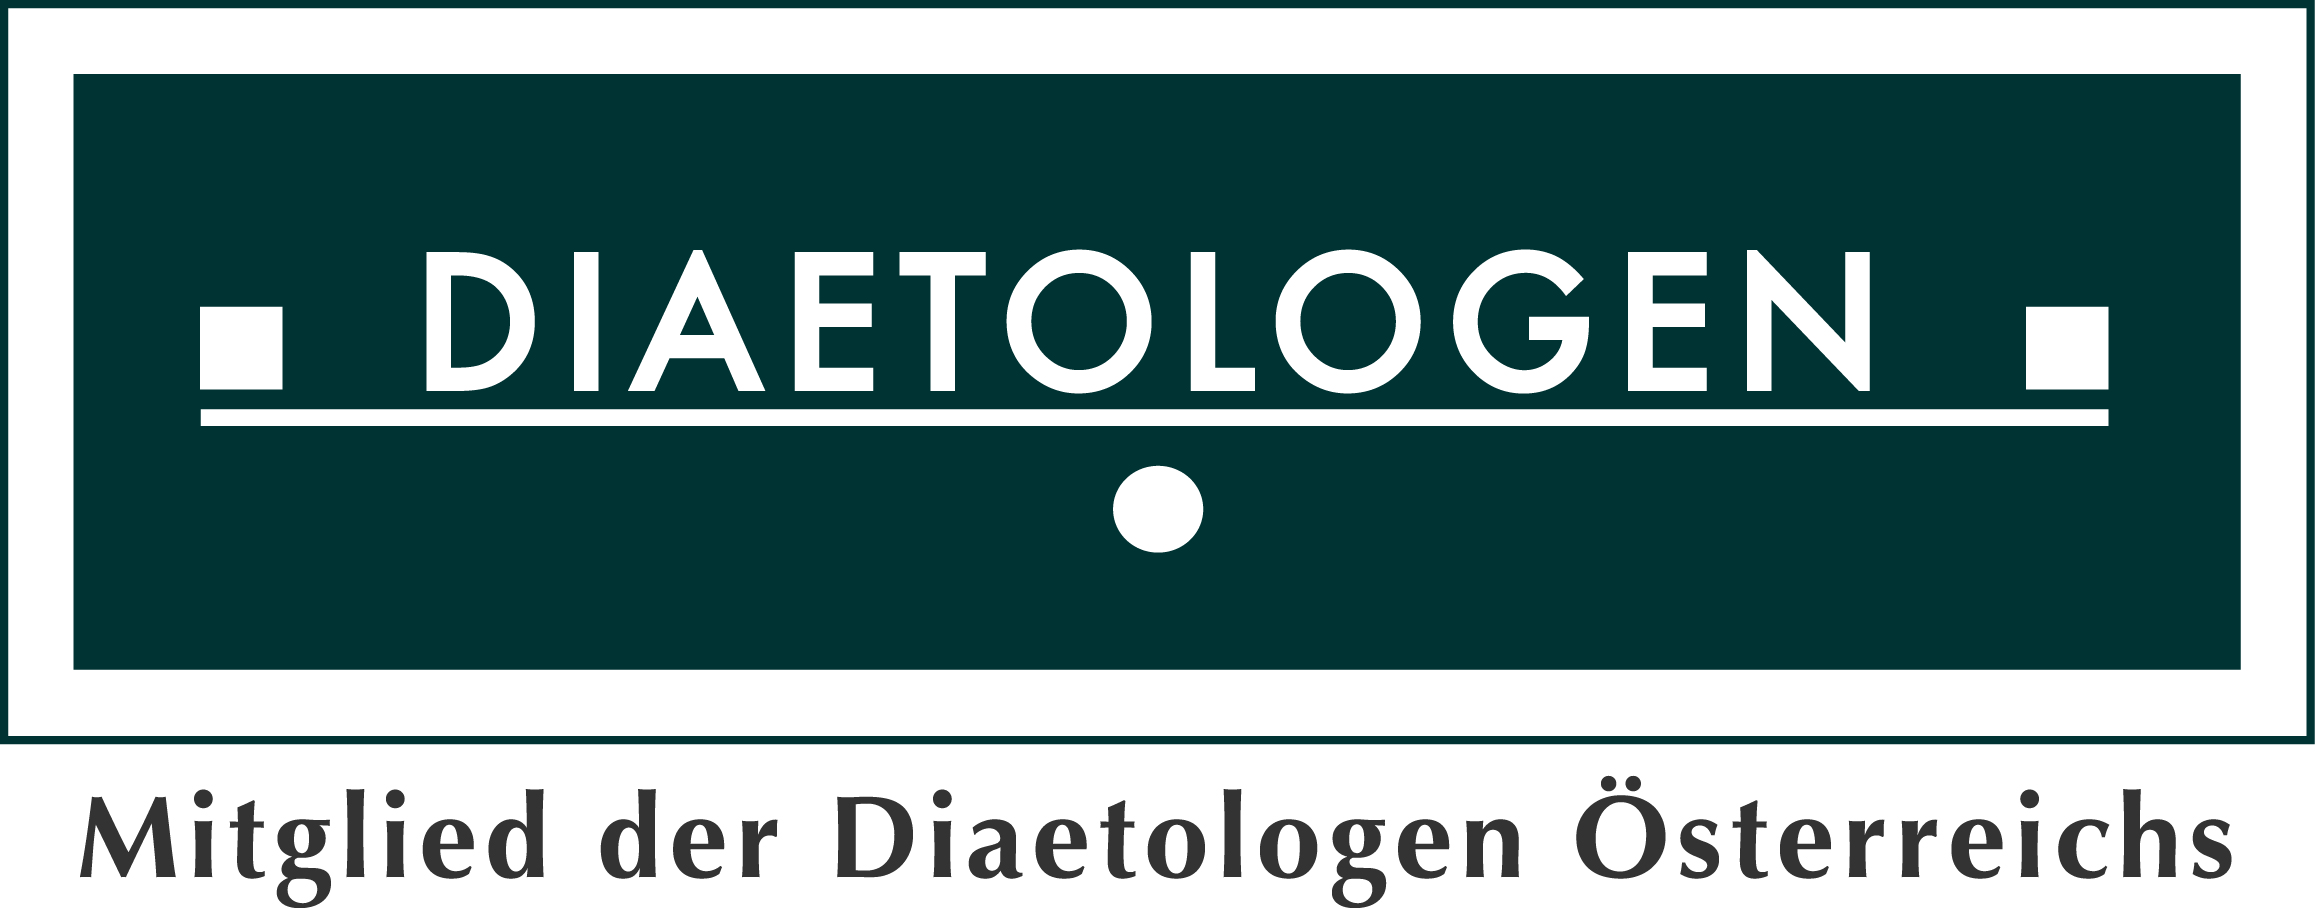 https://www.diaetologen.at/fileadmin/user_upload/documents/Mitgliederbereich/Logo_4c_neu_Mitglied.jpg